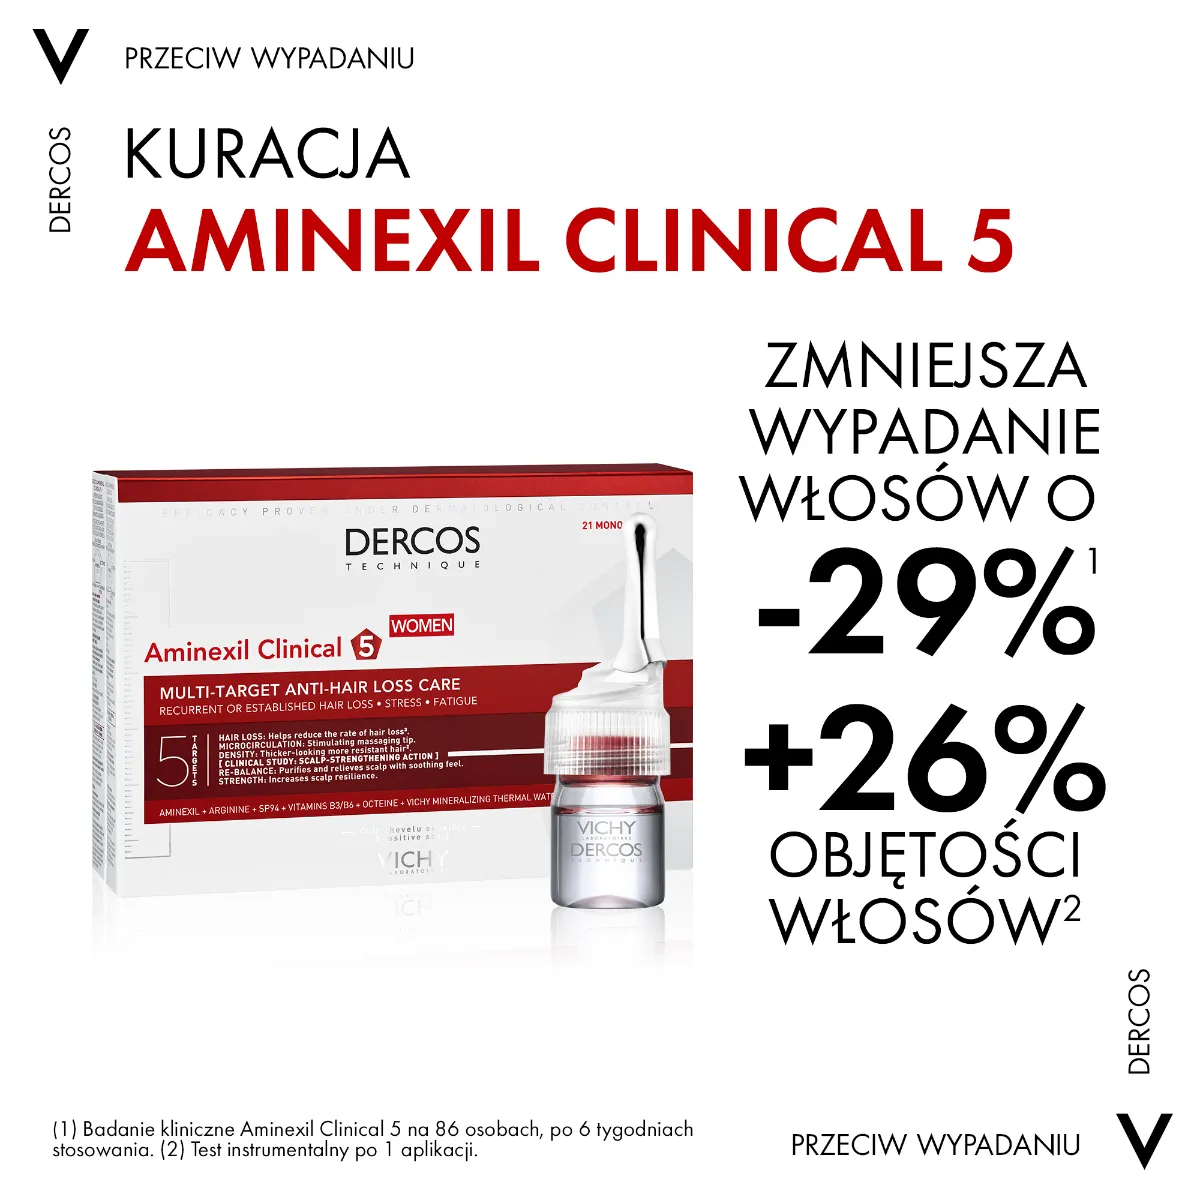 Vichy Dercos Aminexil Clinical 5 Kuracja przeciw wypadaniu włosów dla kobiet, 21 ampułek 